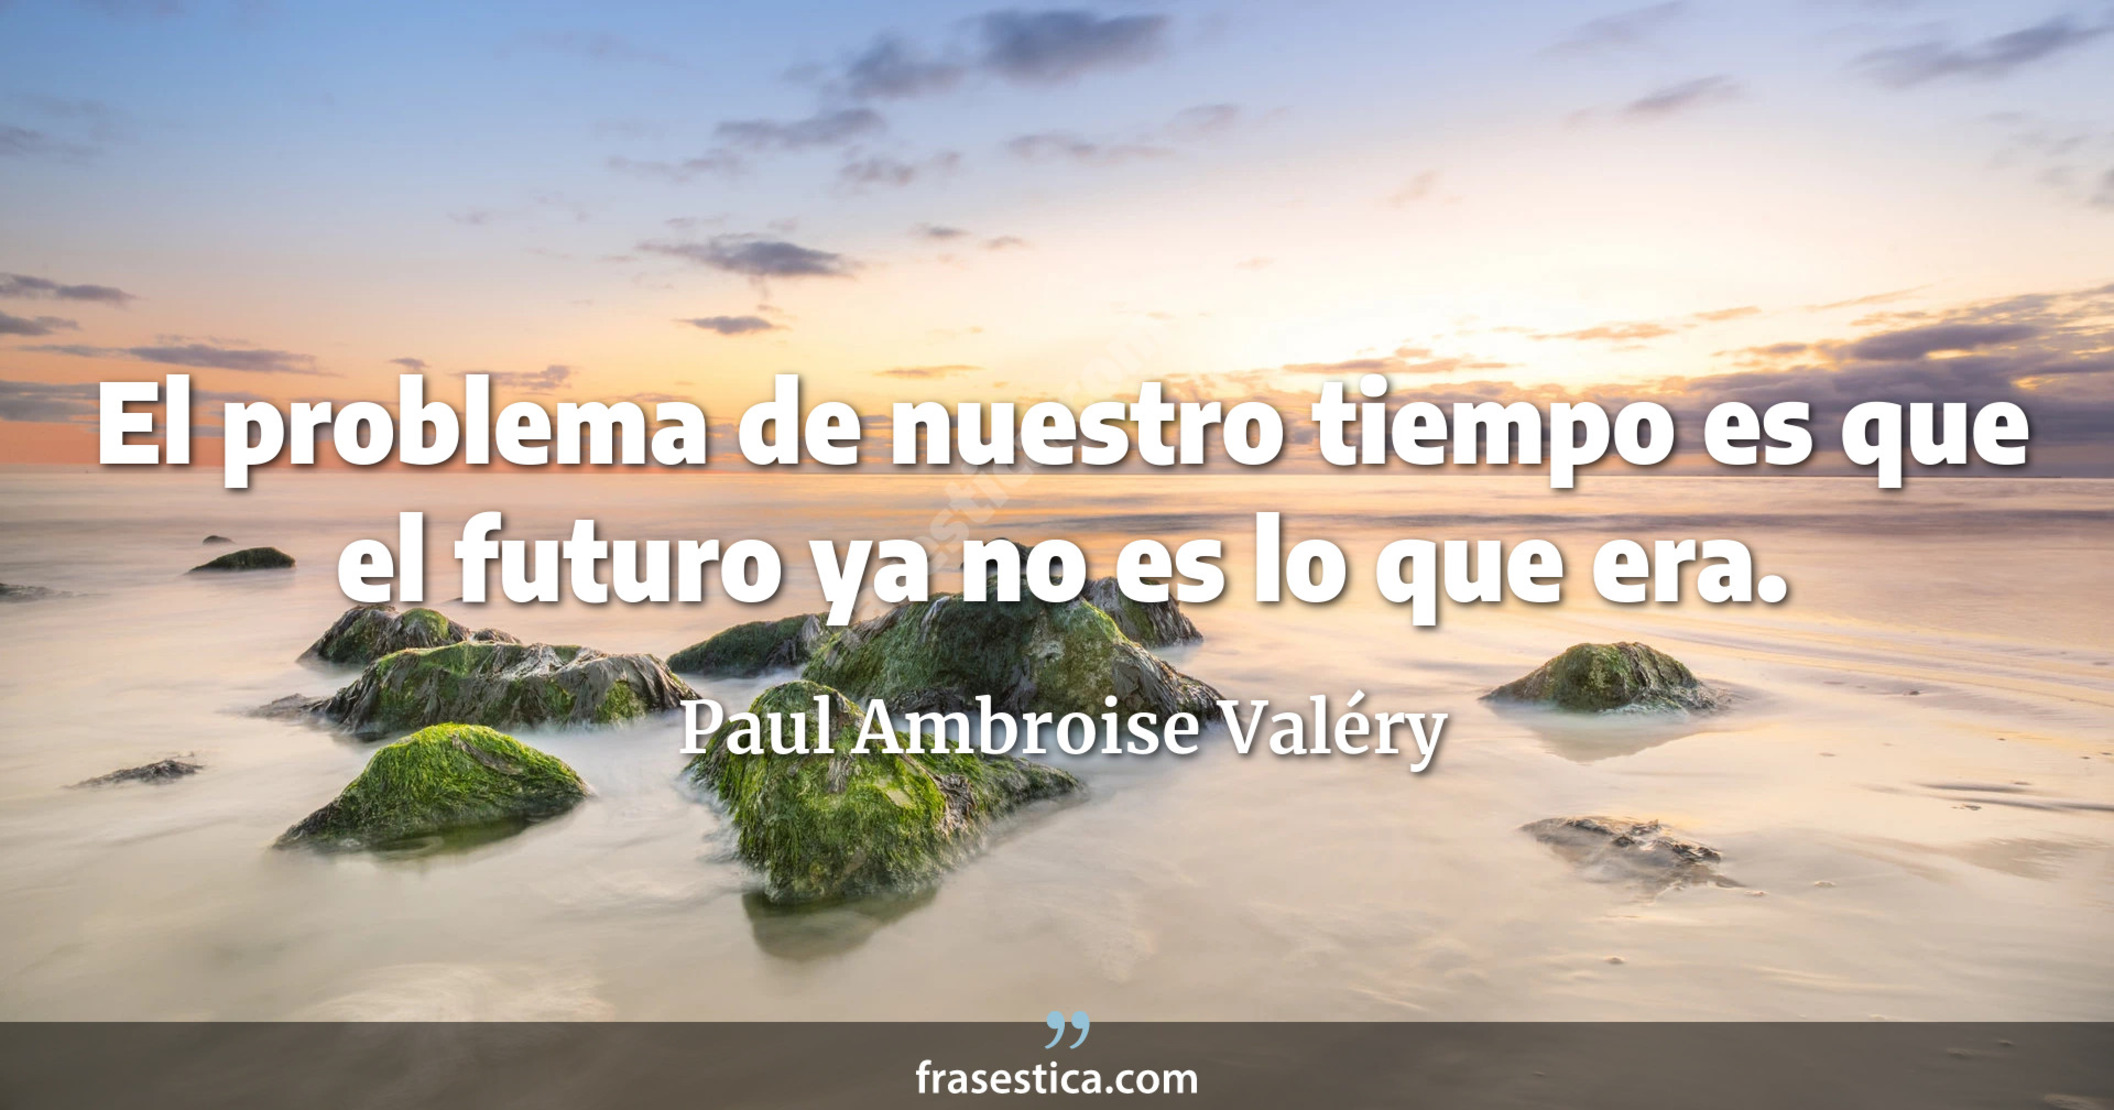 El problema de nuestro tiempo es que el futuro ya no es lo que era. - Paul Ambroise Valéry